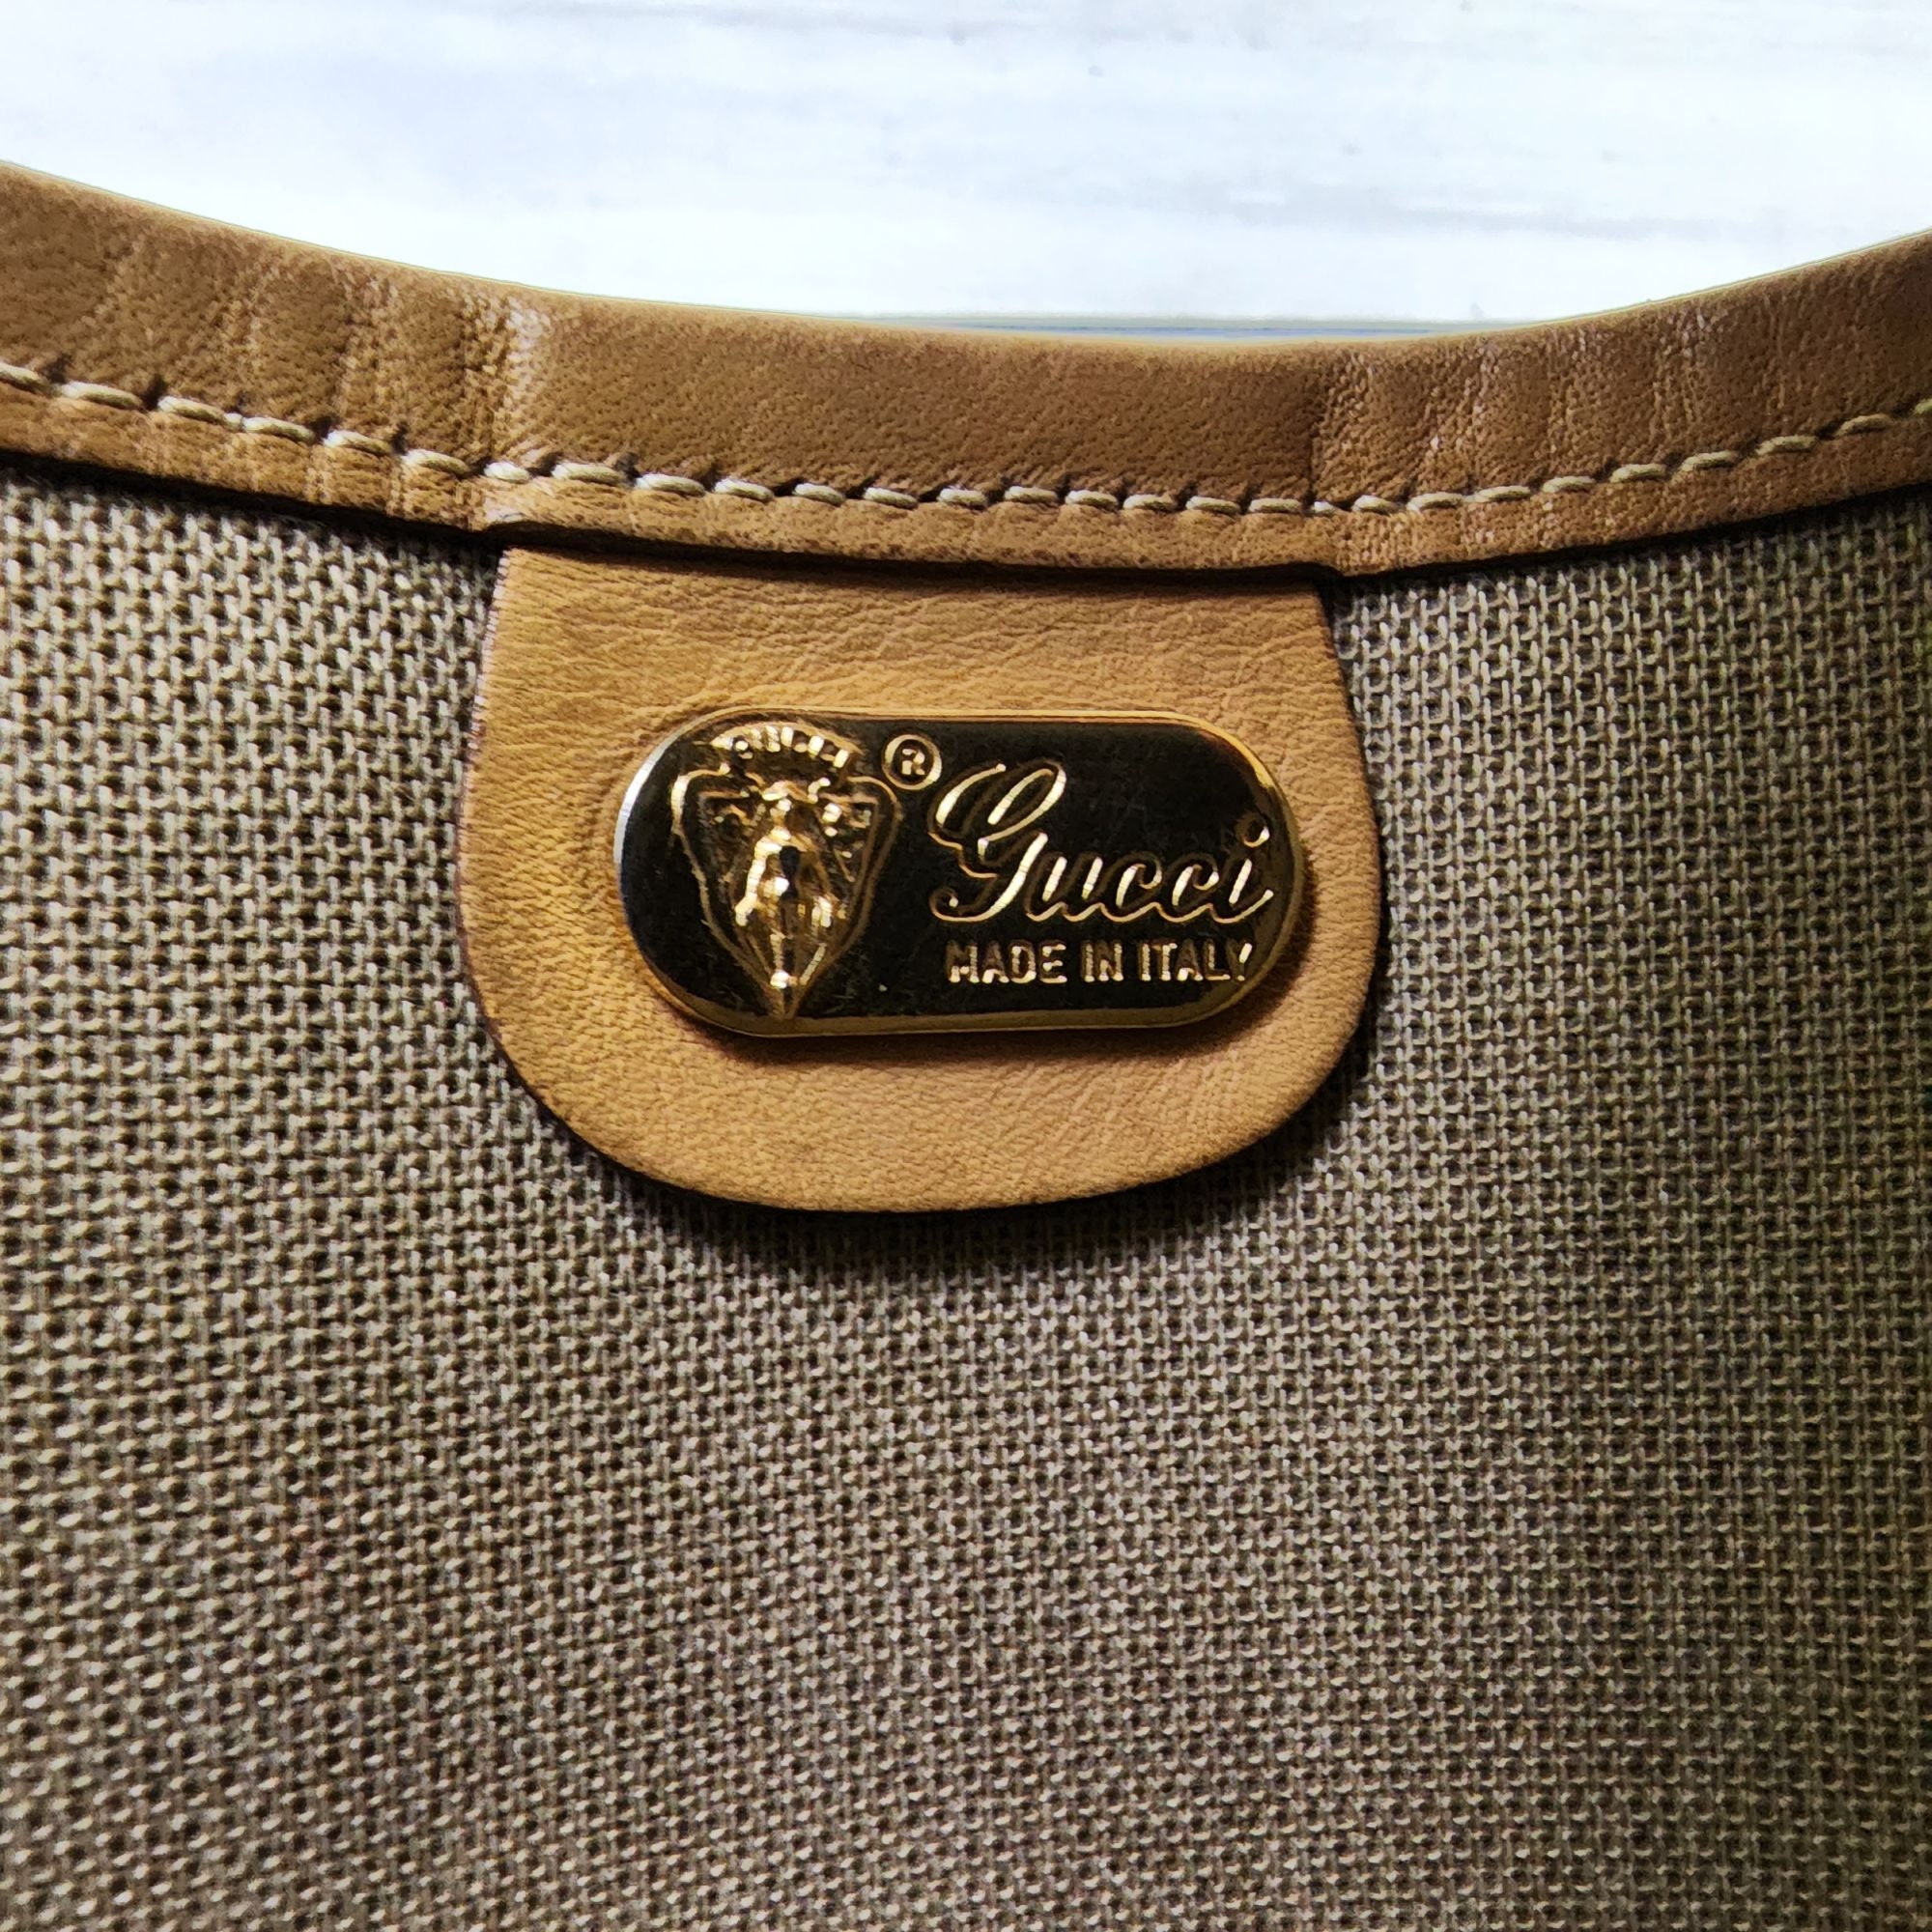 Gucci Handbag Satchel Vintage Made In Italy 1980s